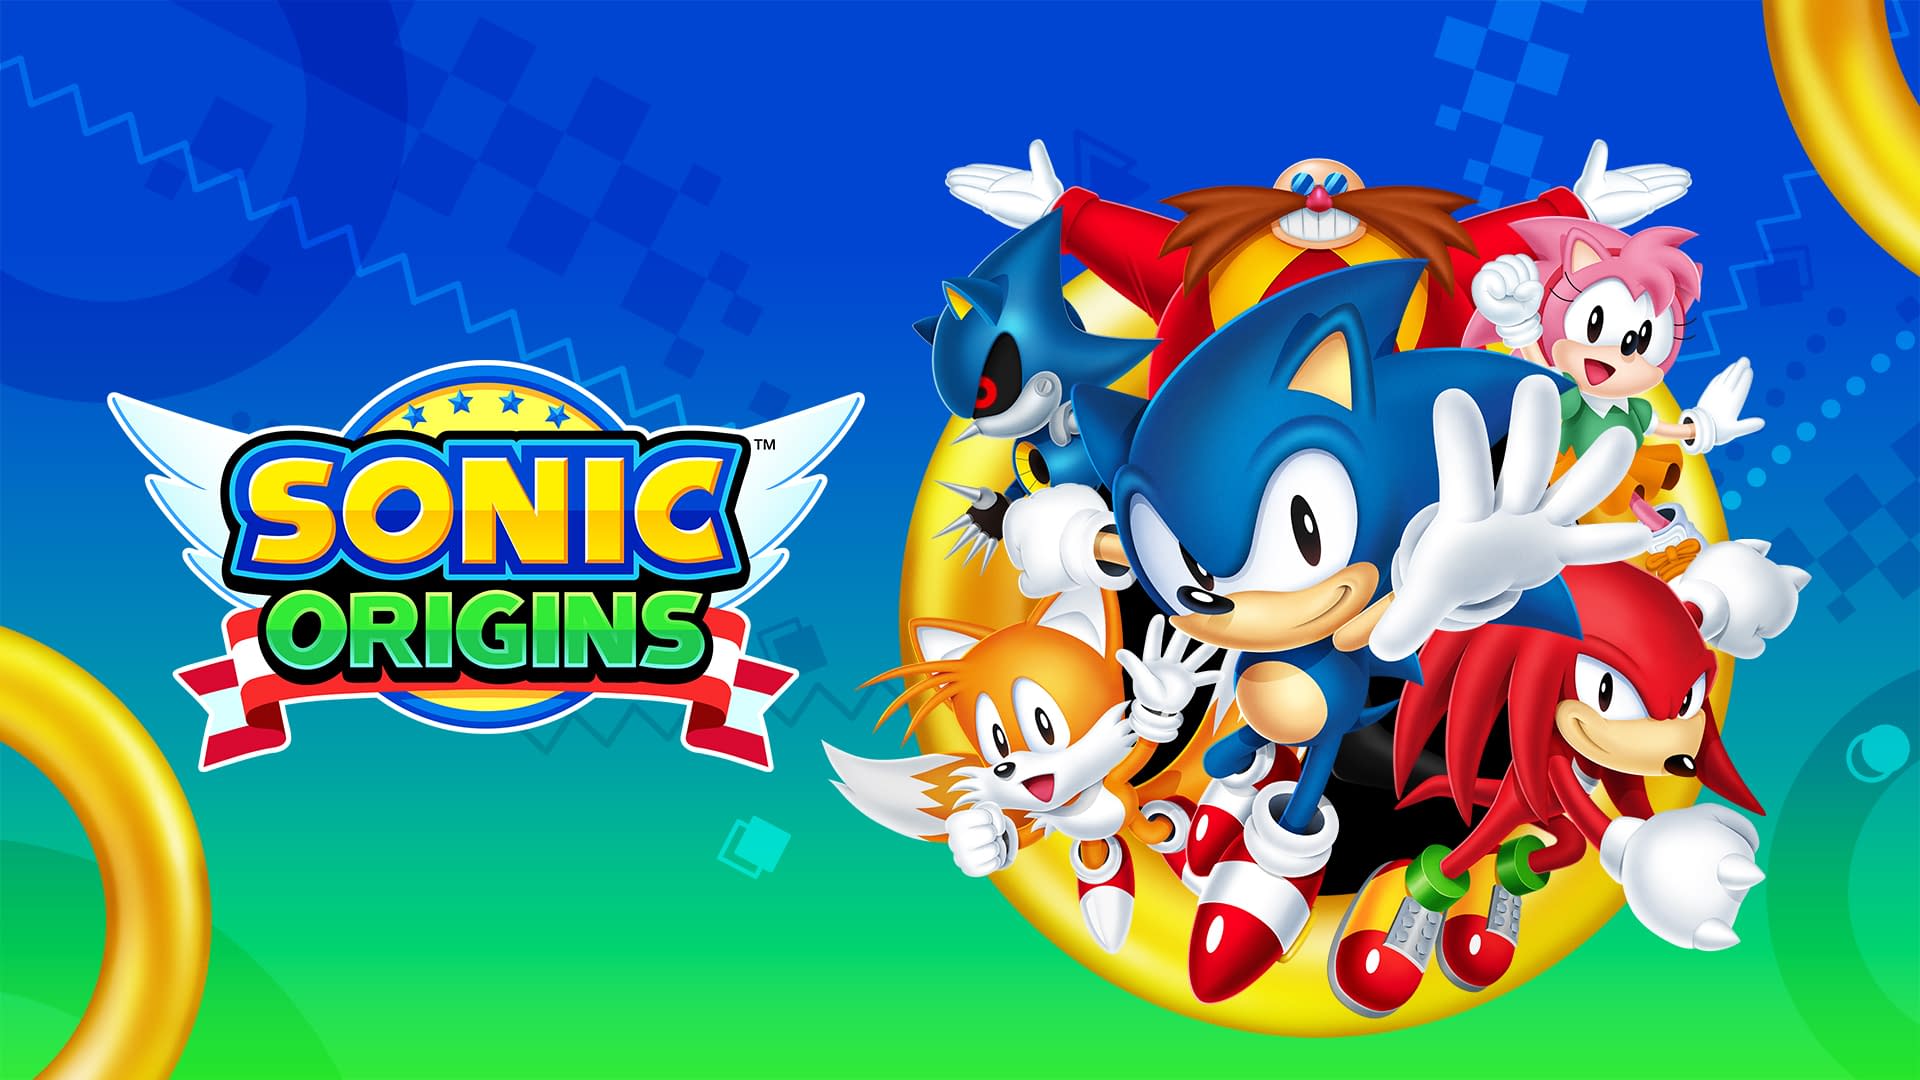 SONIC ORIGINS - Sonic 3 & Knuckles- FULL GAME (As Hyper Sonic) 